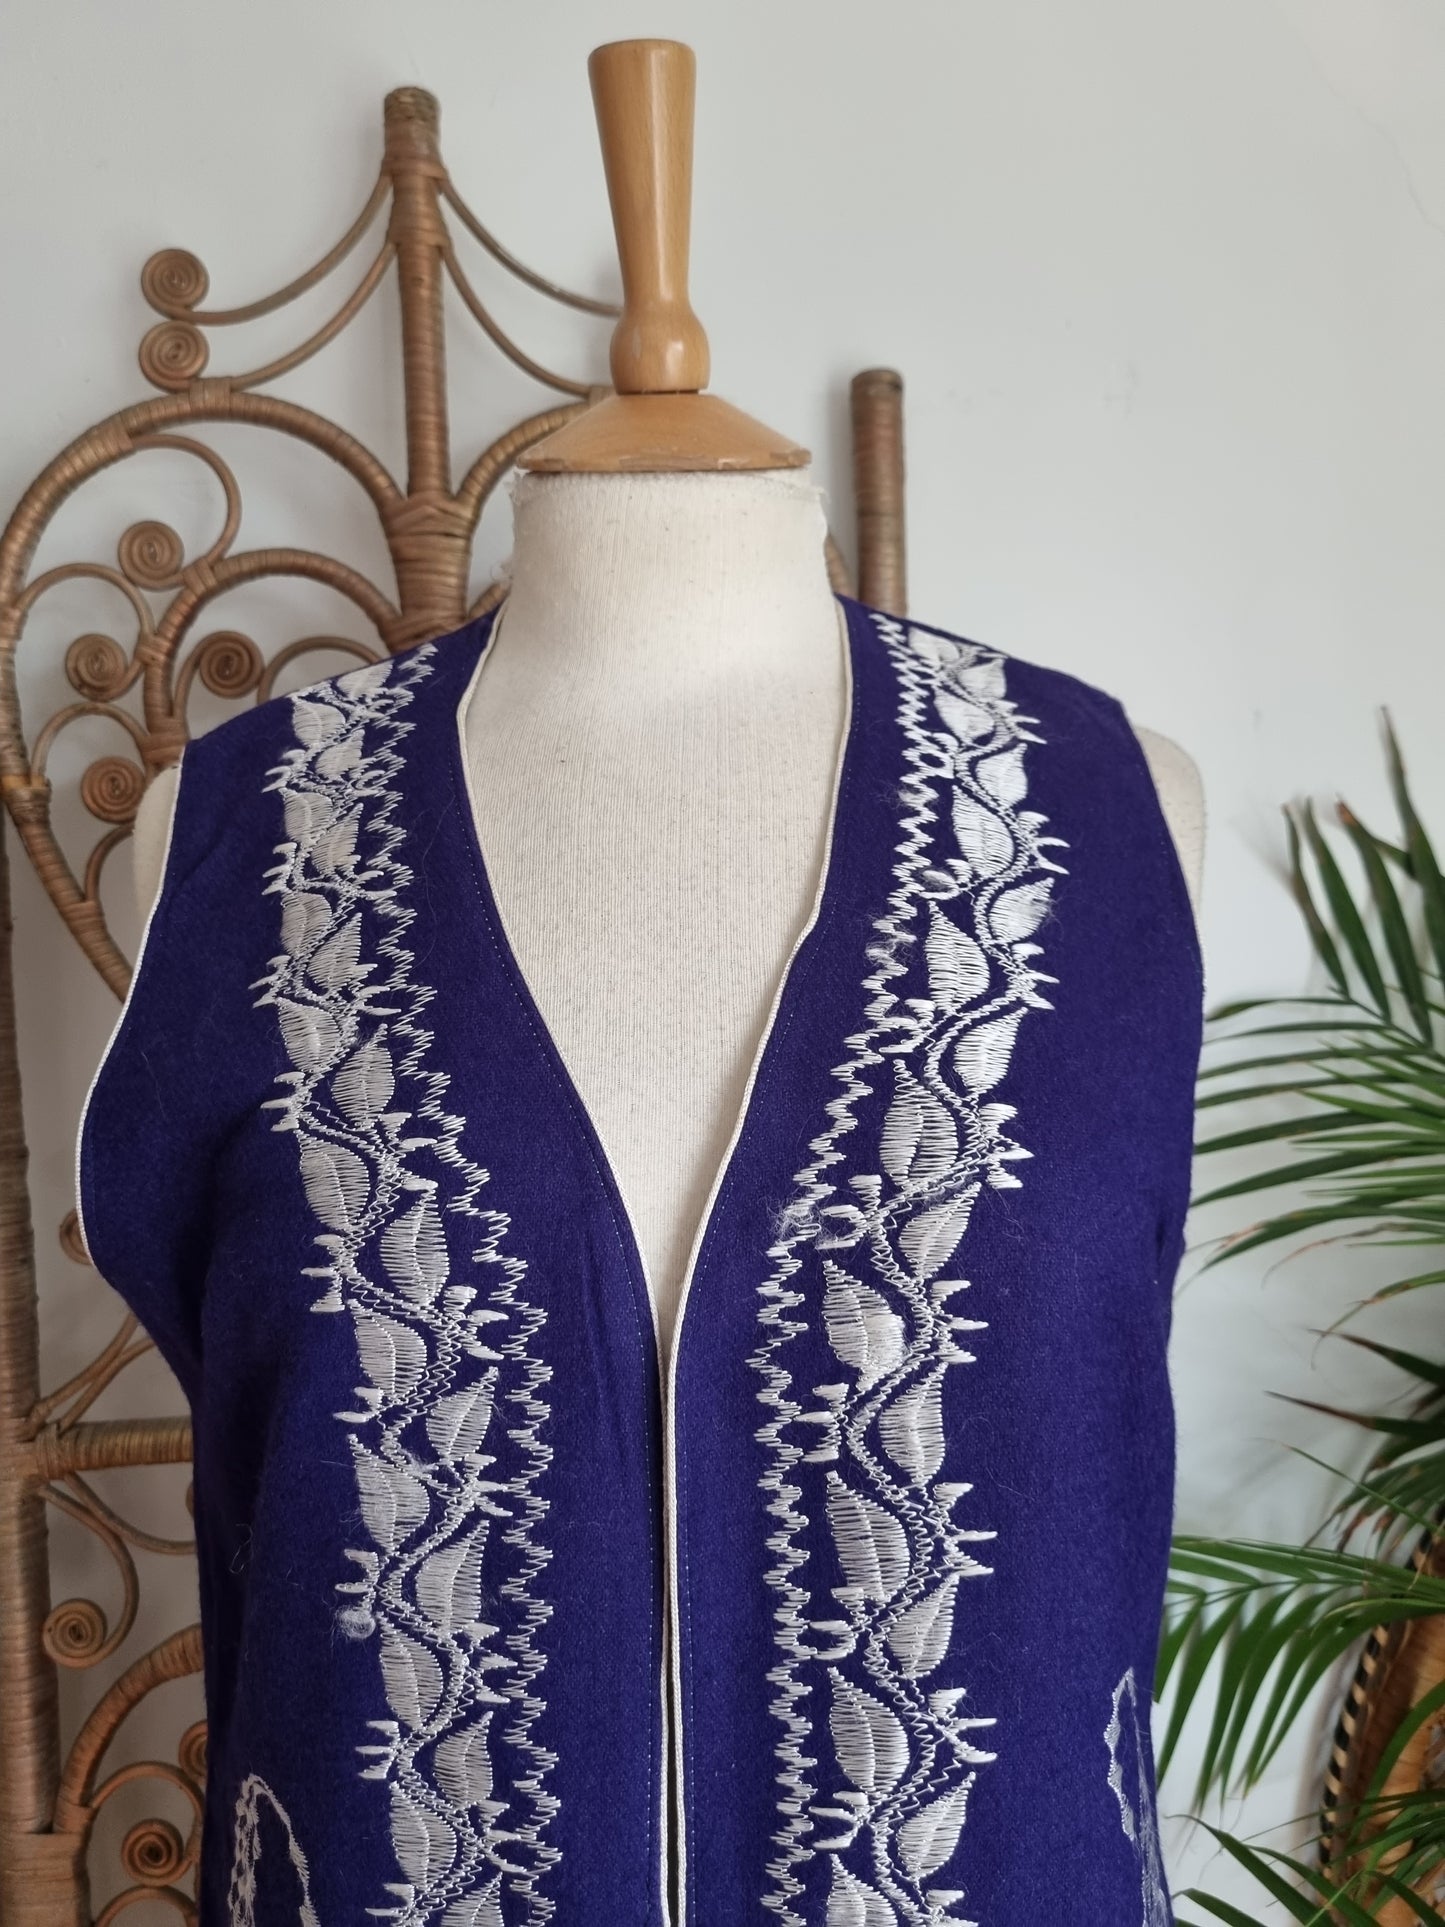 Vintage embroidered waistcoat